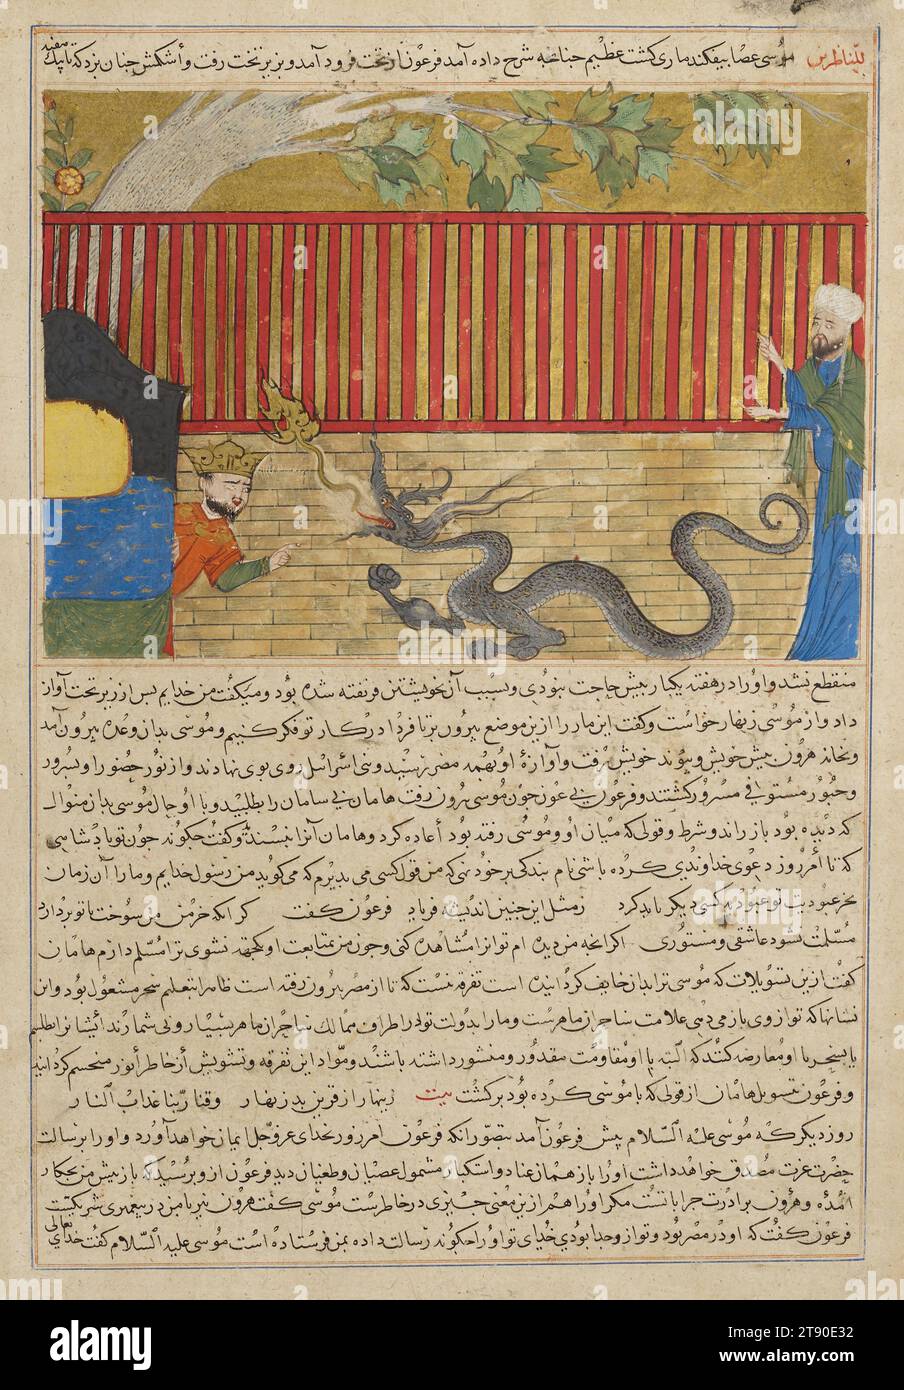 Mosè prevalente sul faraone, 1425-1430, Ḥāfiẓ-i Abrū, morì nel 1430, 16 7/8 x 13 1/8 pollici. (42,8 x 33,3 cm) (foglio)13 5/16 x 15/16" (33,8 x 22,7 cm) (immagine), inchiostro, acquerello opaco e oro su carta, Afghanistan, XV secolo, Mosè sconfigge il faraone con l'aiuto di un drago, un tema che è tratto dalla Bibbia. L'inclusione del drago riflette un'influenza cinese Foto Stock